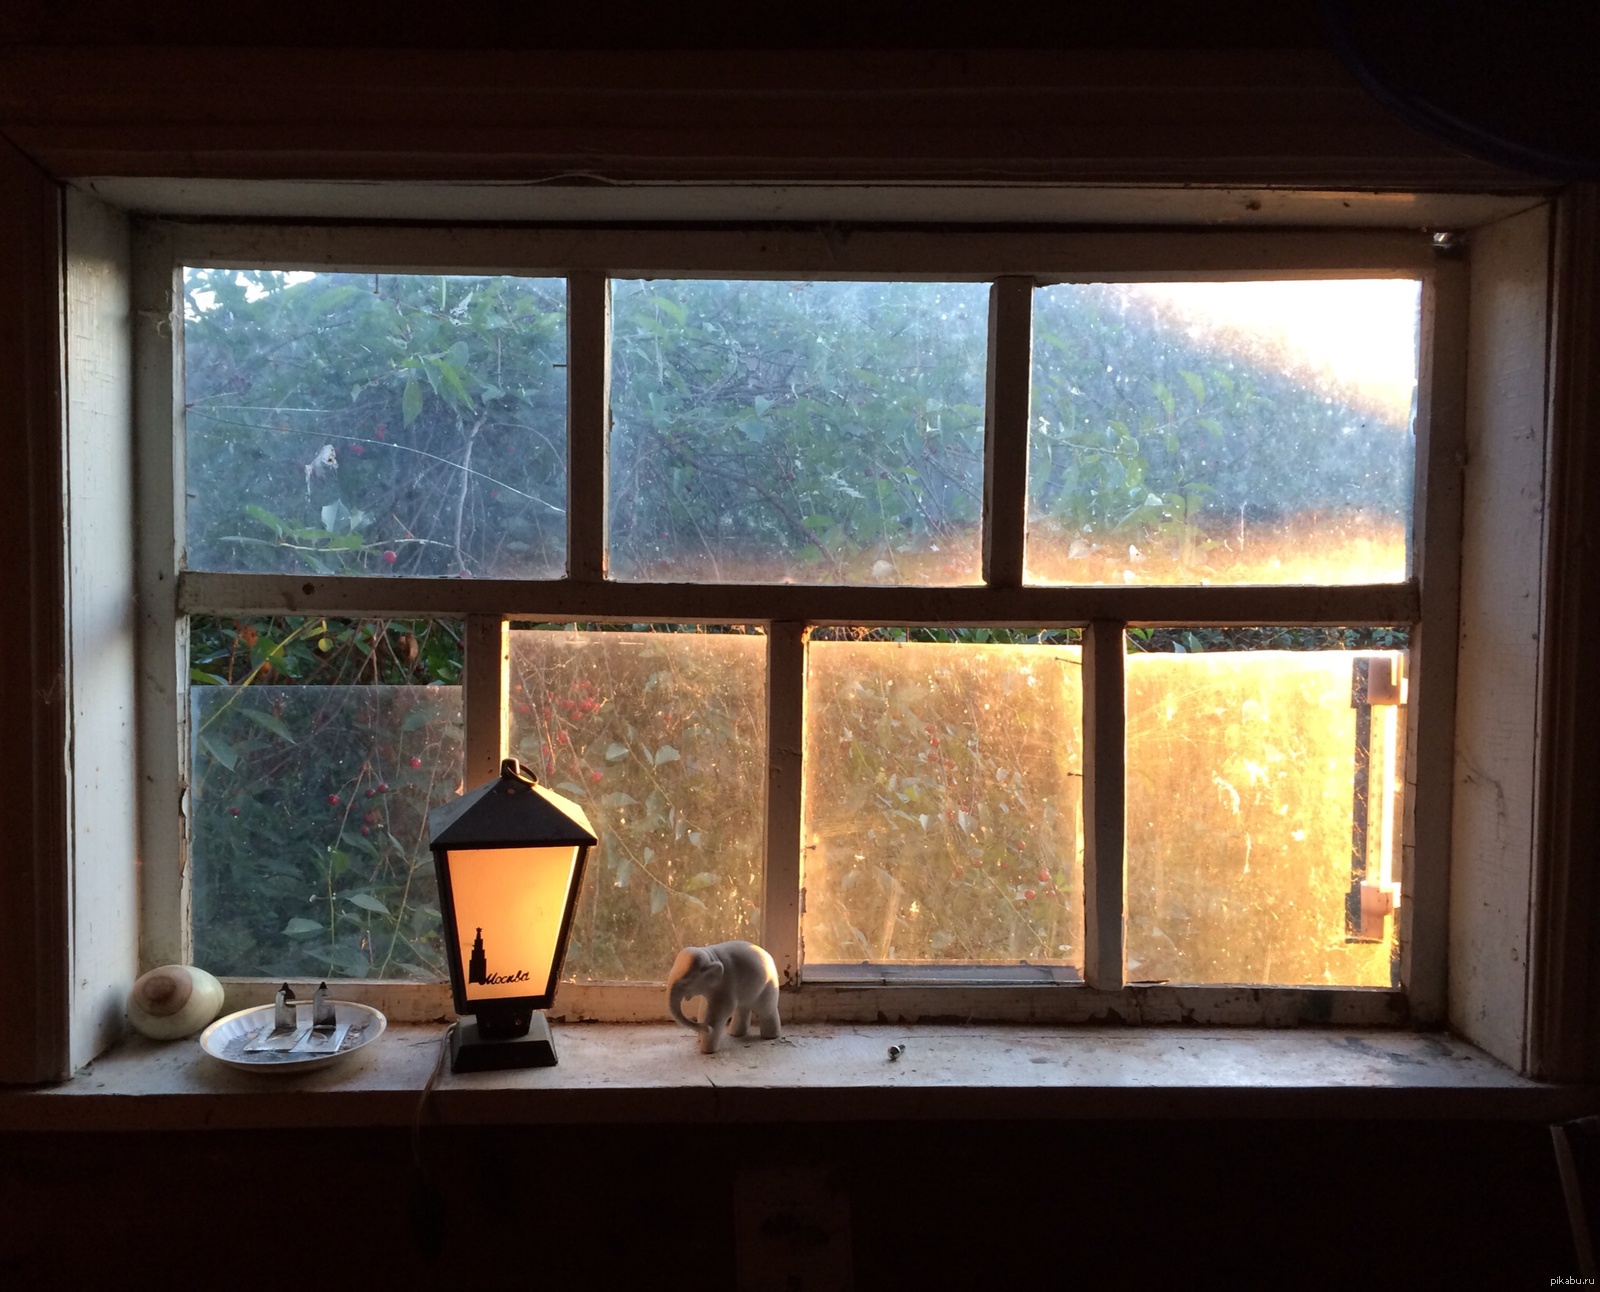 Вечер свет в окне. Уютный вид из окна. Зимнее окно. Окно с подоконником. Вид из окна с подоконником.